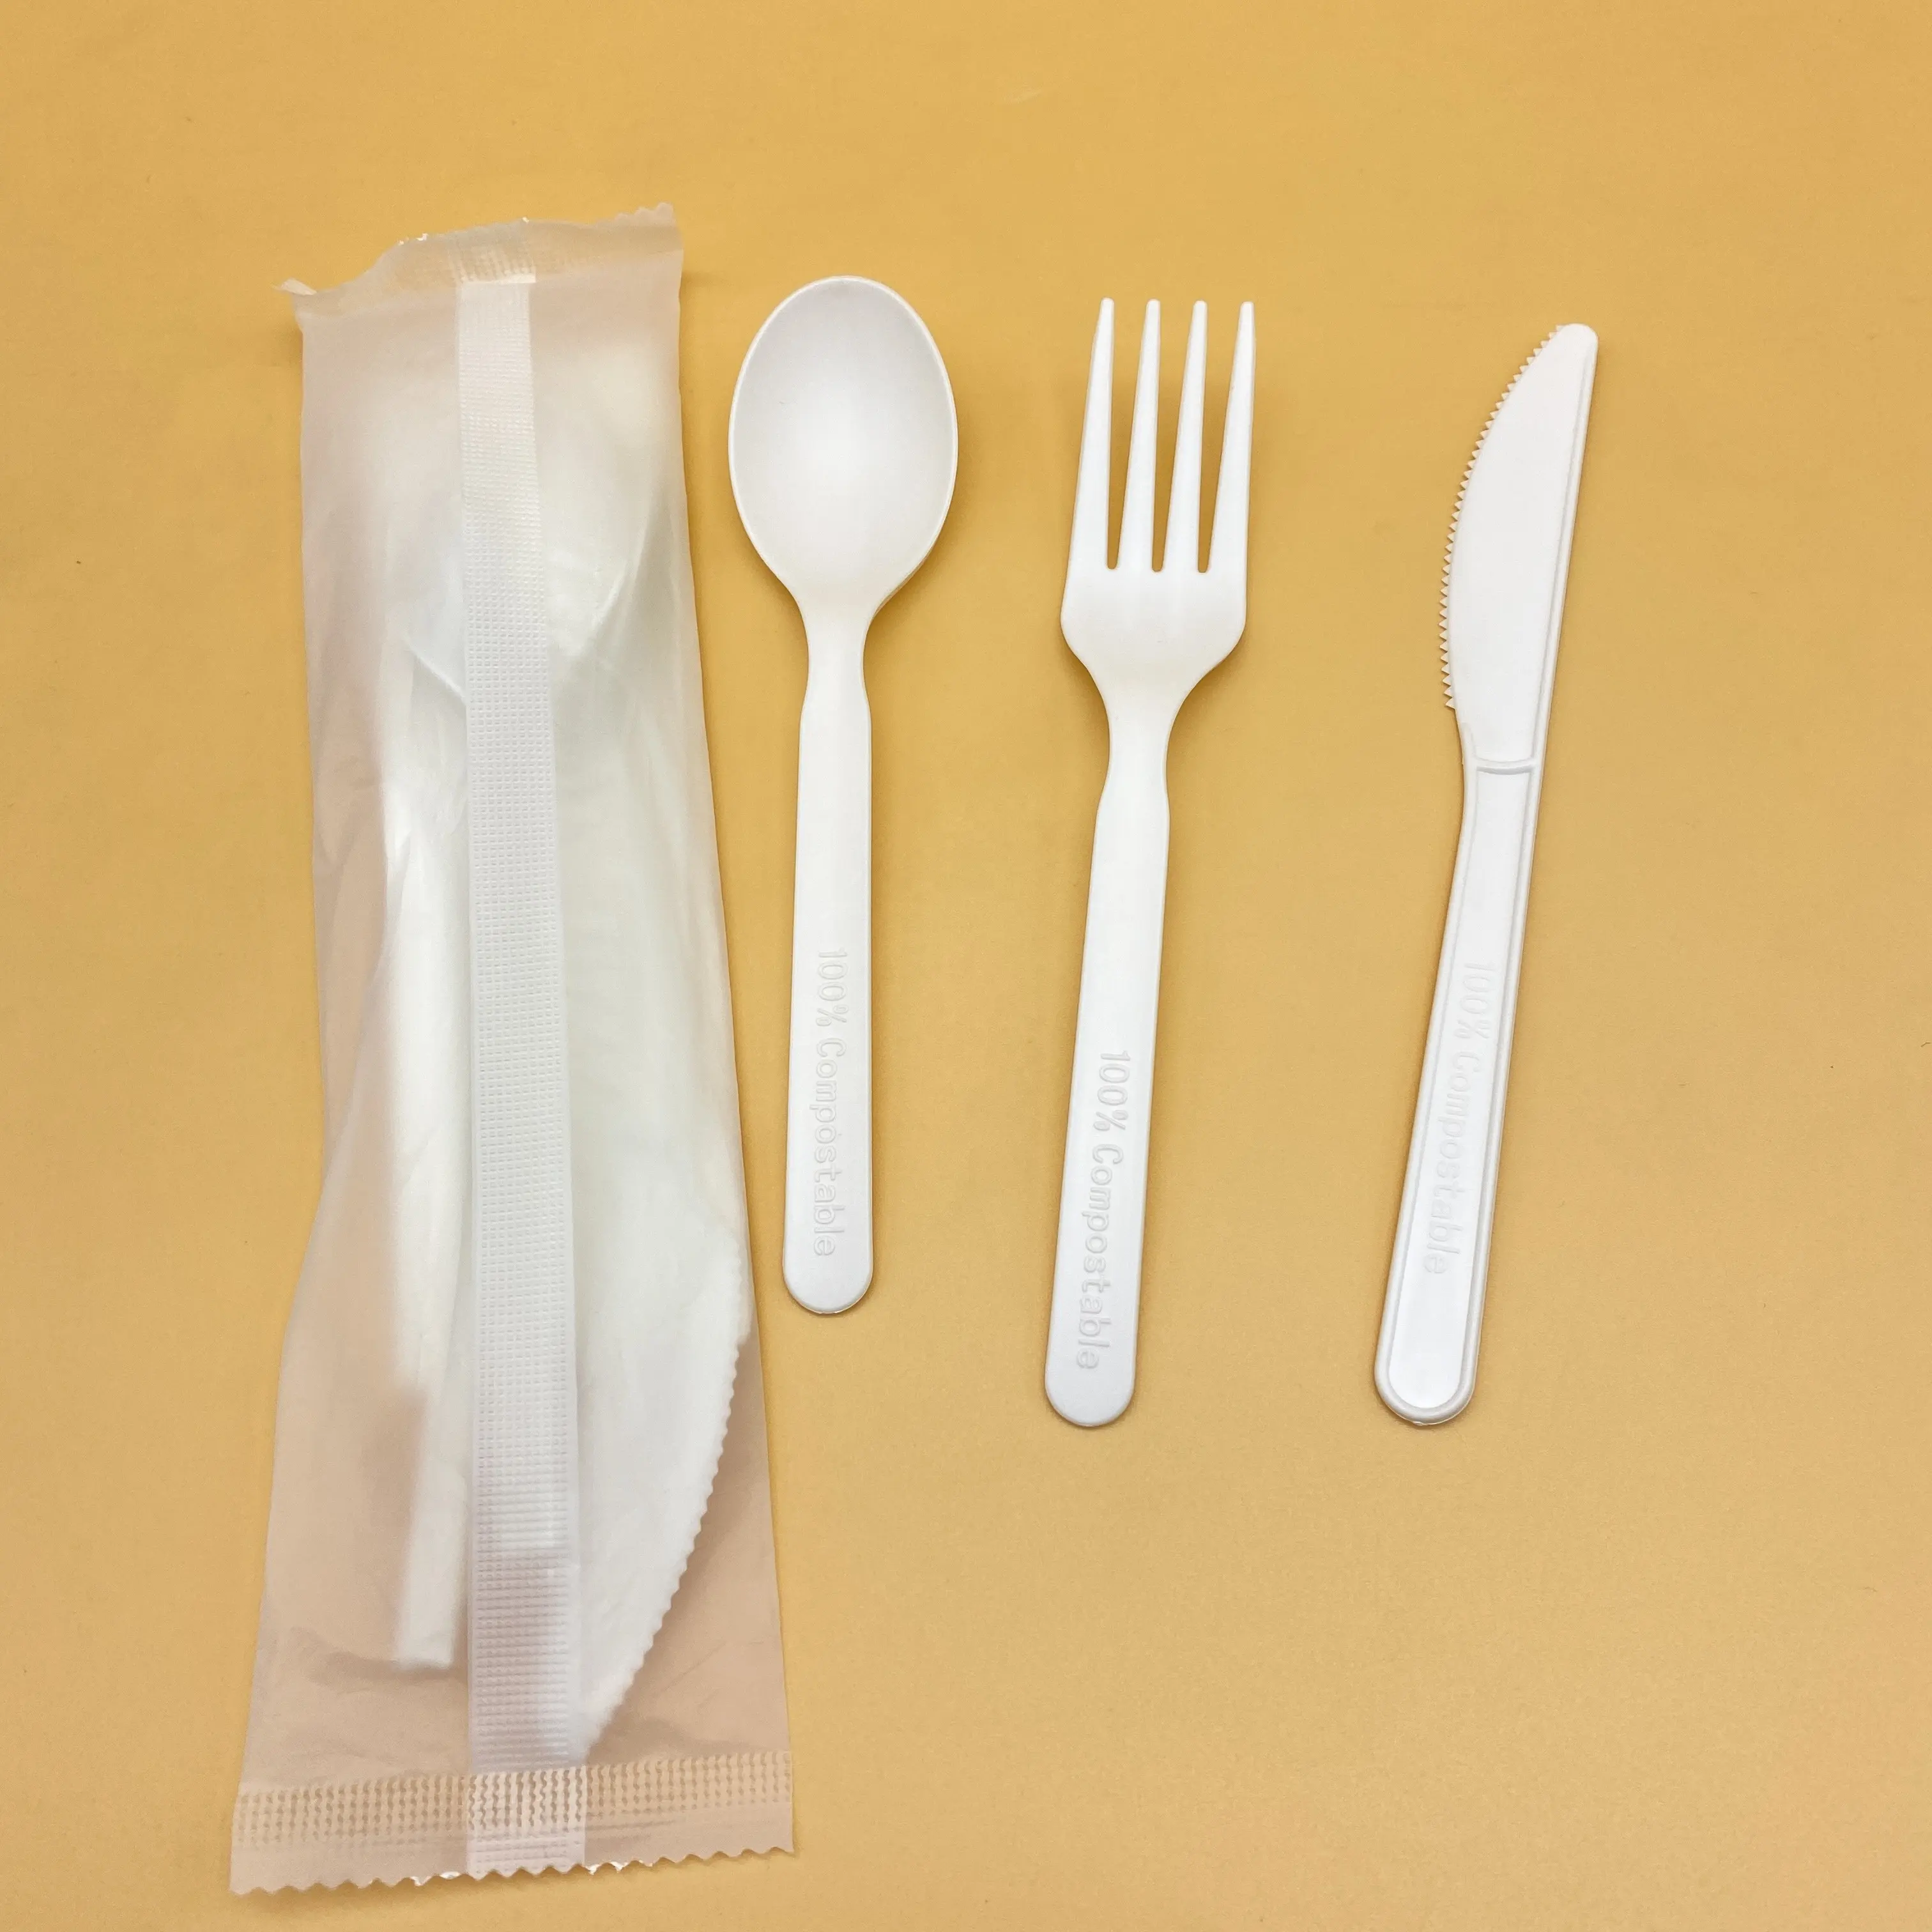 Coltello, forchetta e cucchiaio ecologici e biodegradabili in PLA addensati per uso commerciale alimentare